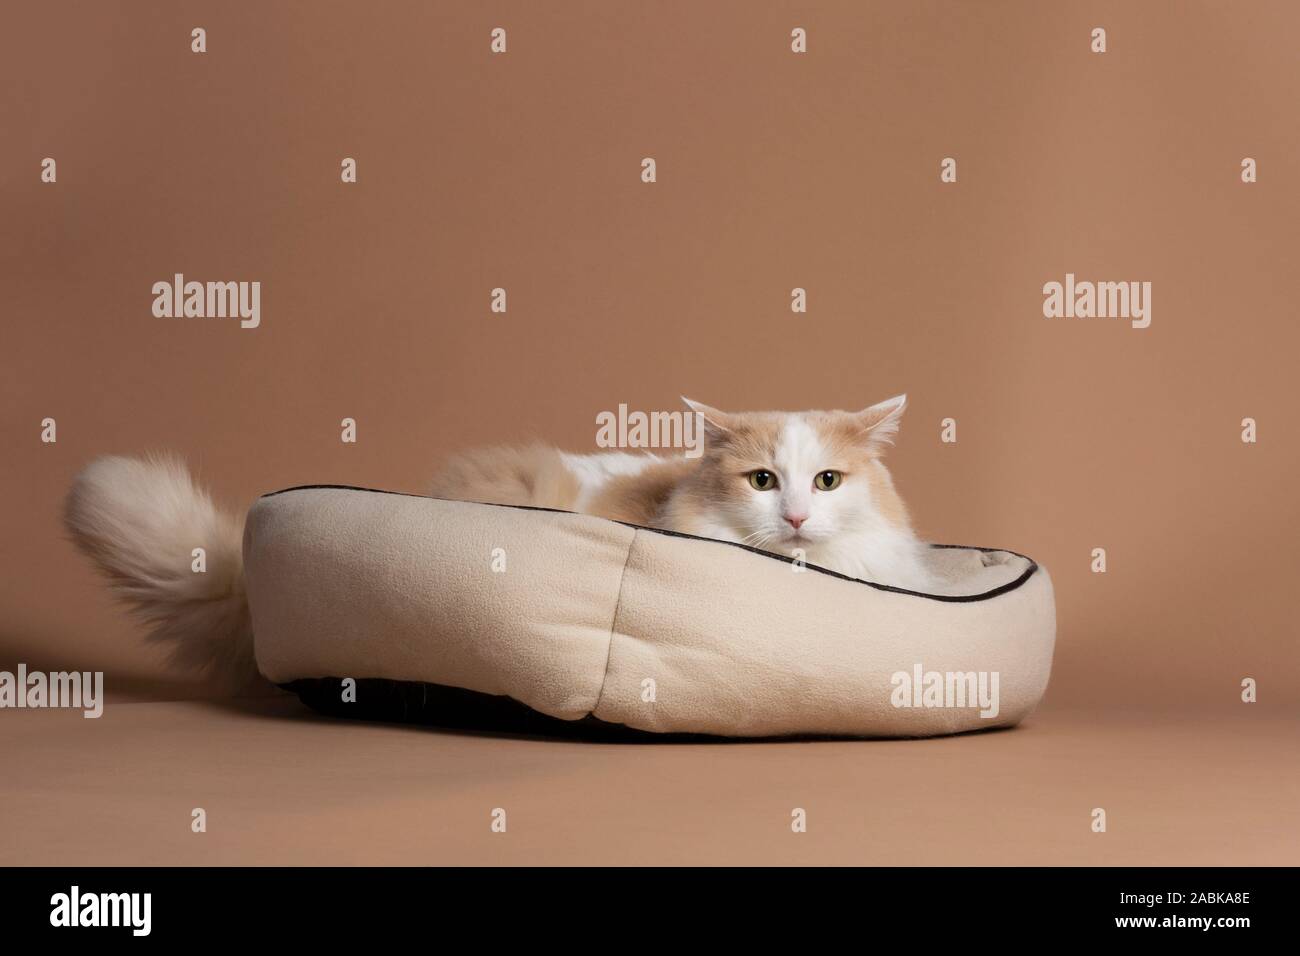 Un chat turc de van isolé et assis dans son panier beige devant un fond beige à brun dans l'appareil. Furry fourrure blanche, cheveux longs wi Banque D'Images